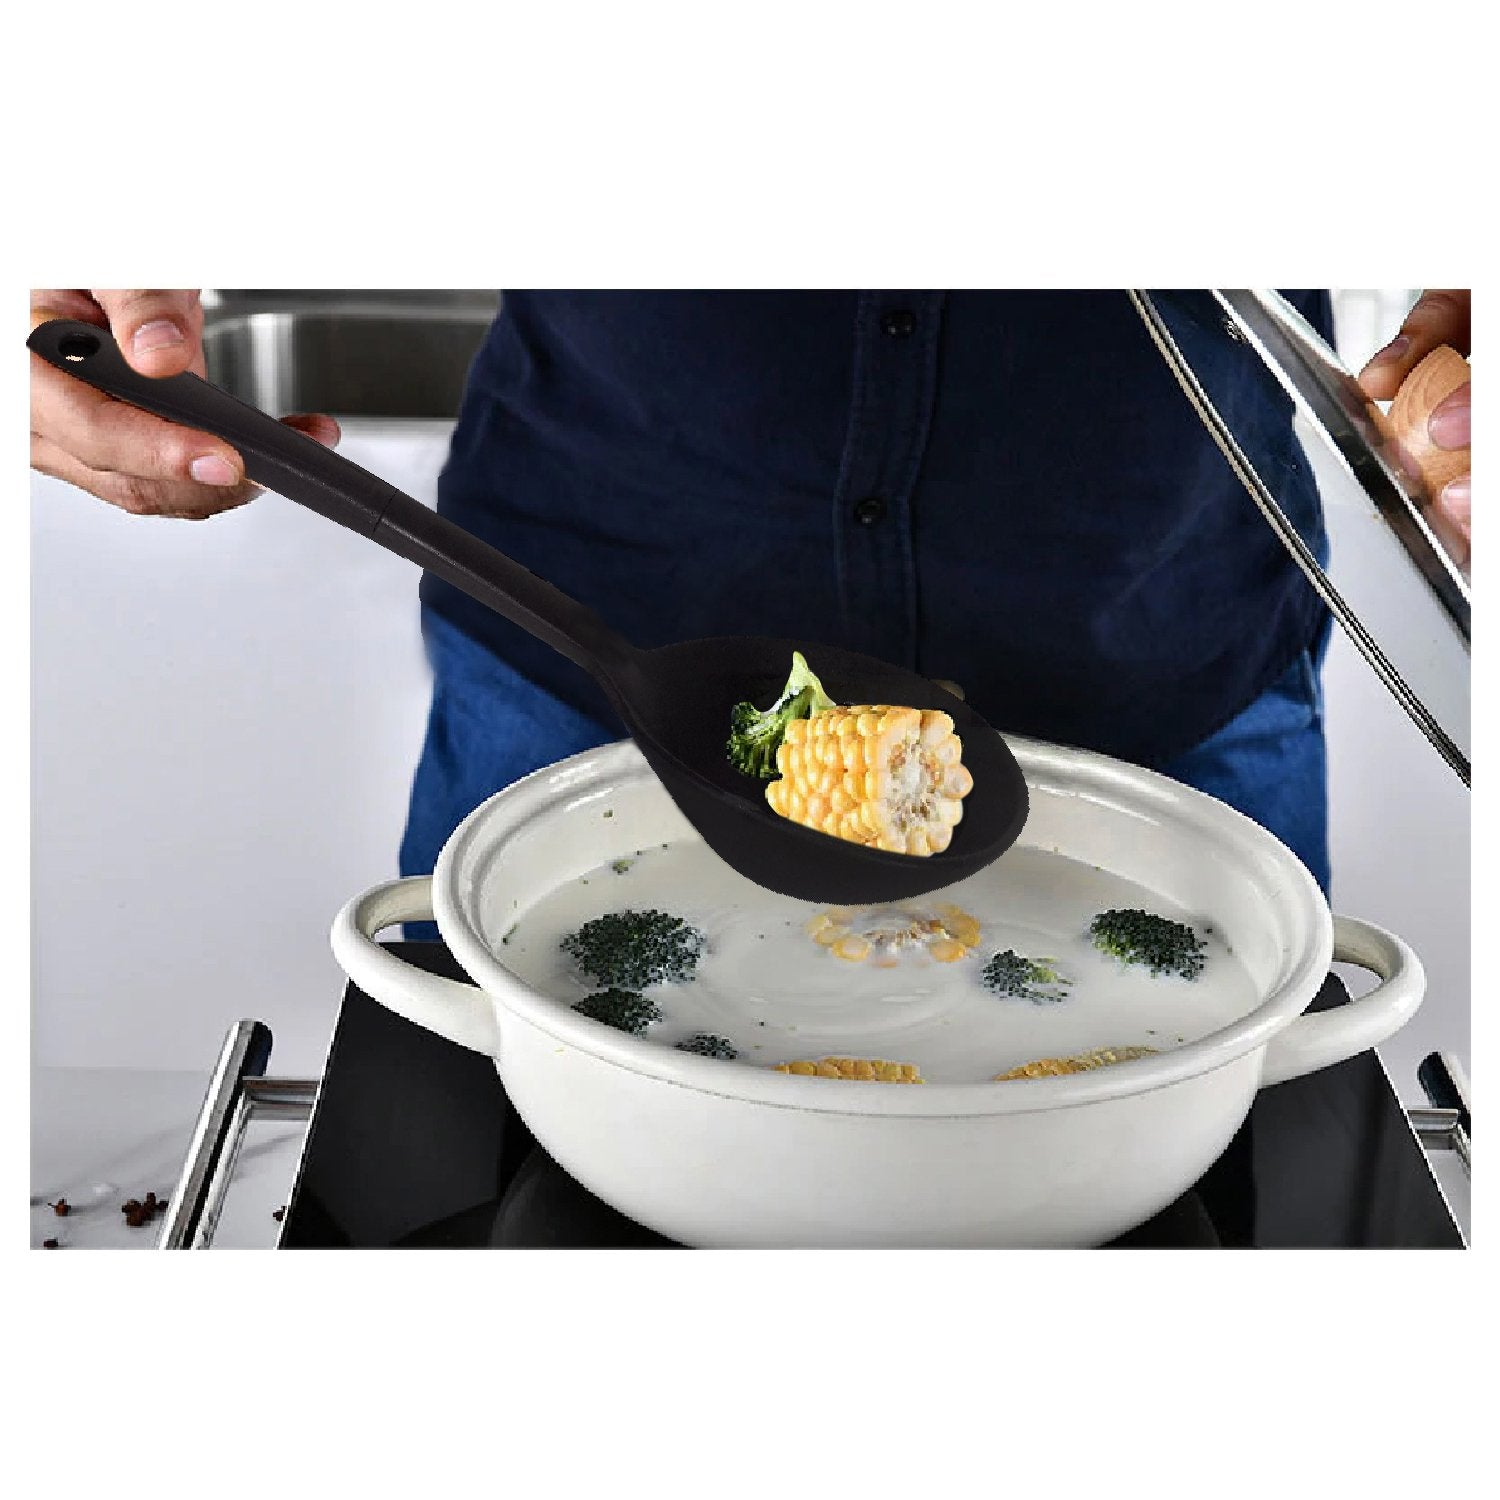 2438 Premium Solid Deep Ladle Heat Resistant Soup Ladle - SkyShopy